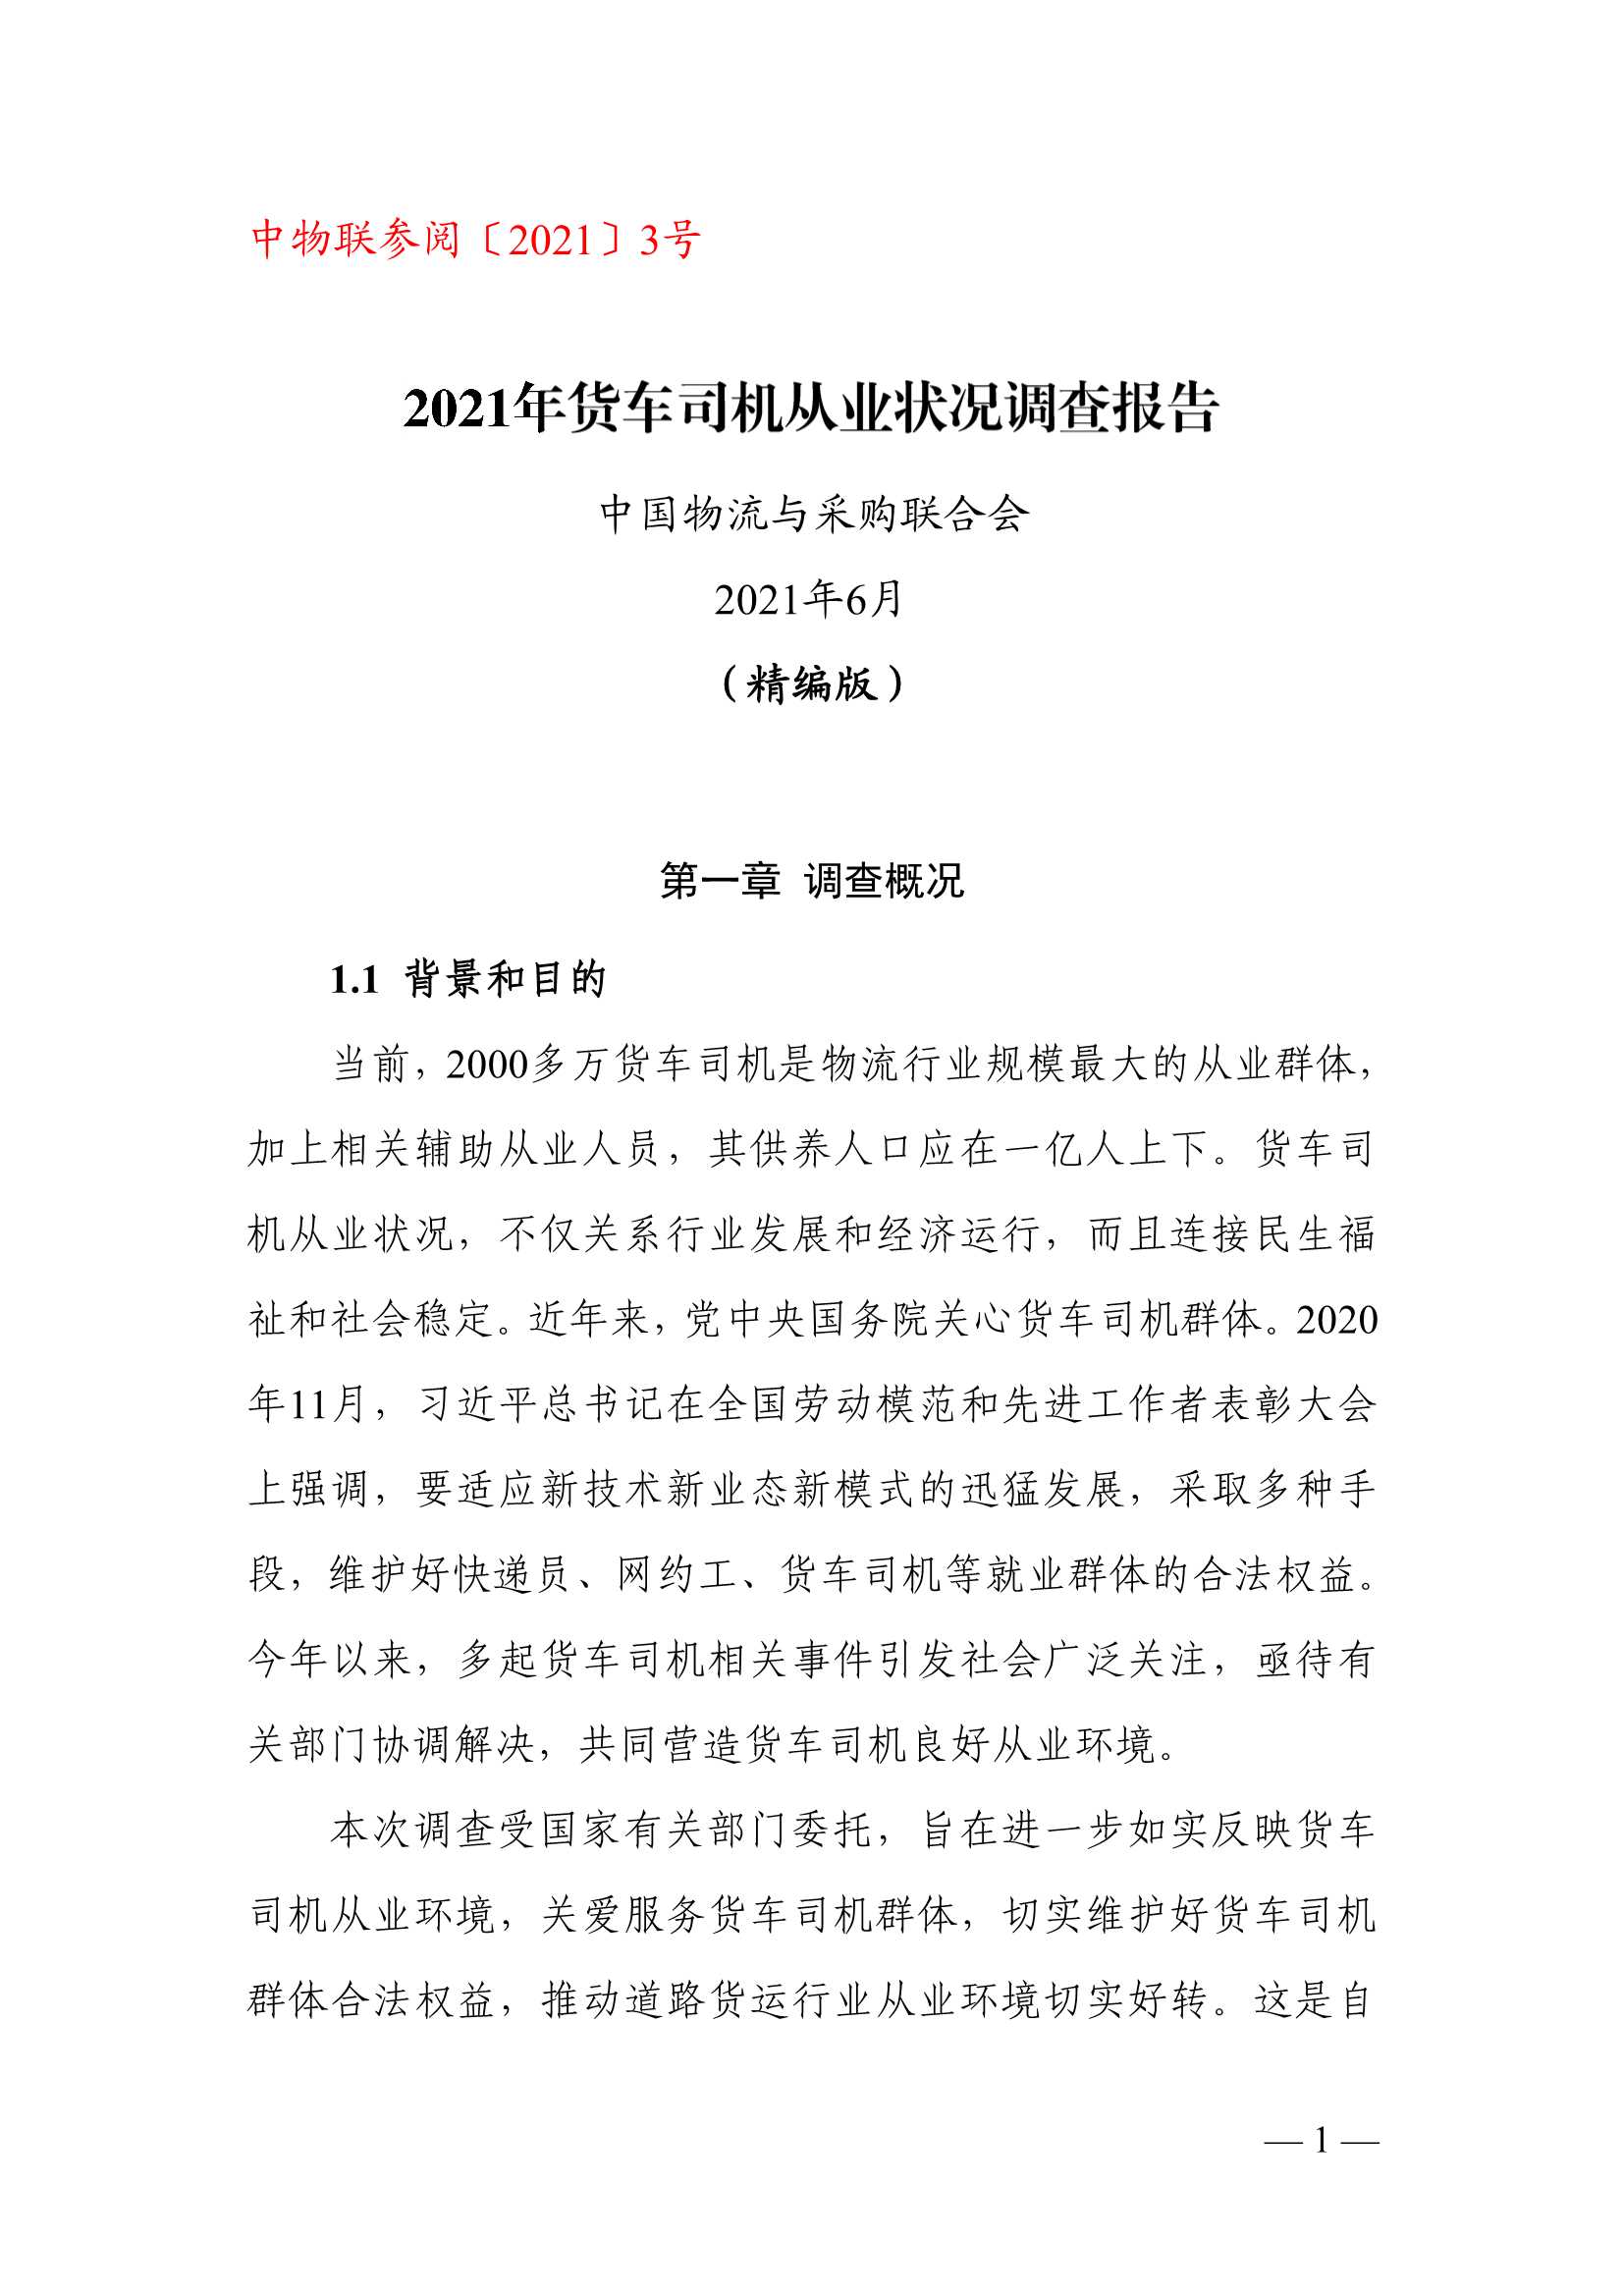 中物联公路货运分会-2021年中国货车司机从业状况调查报告-2021.06-36页